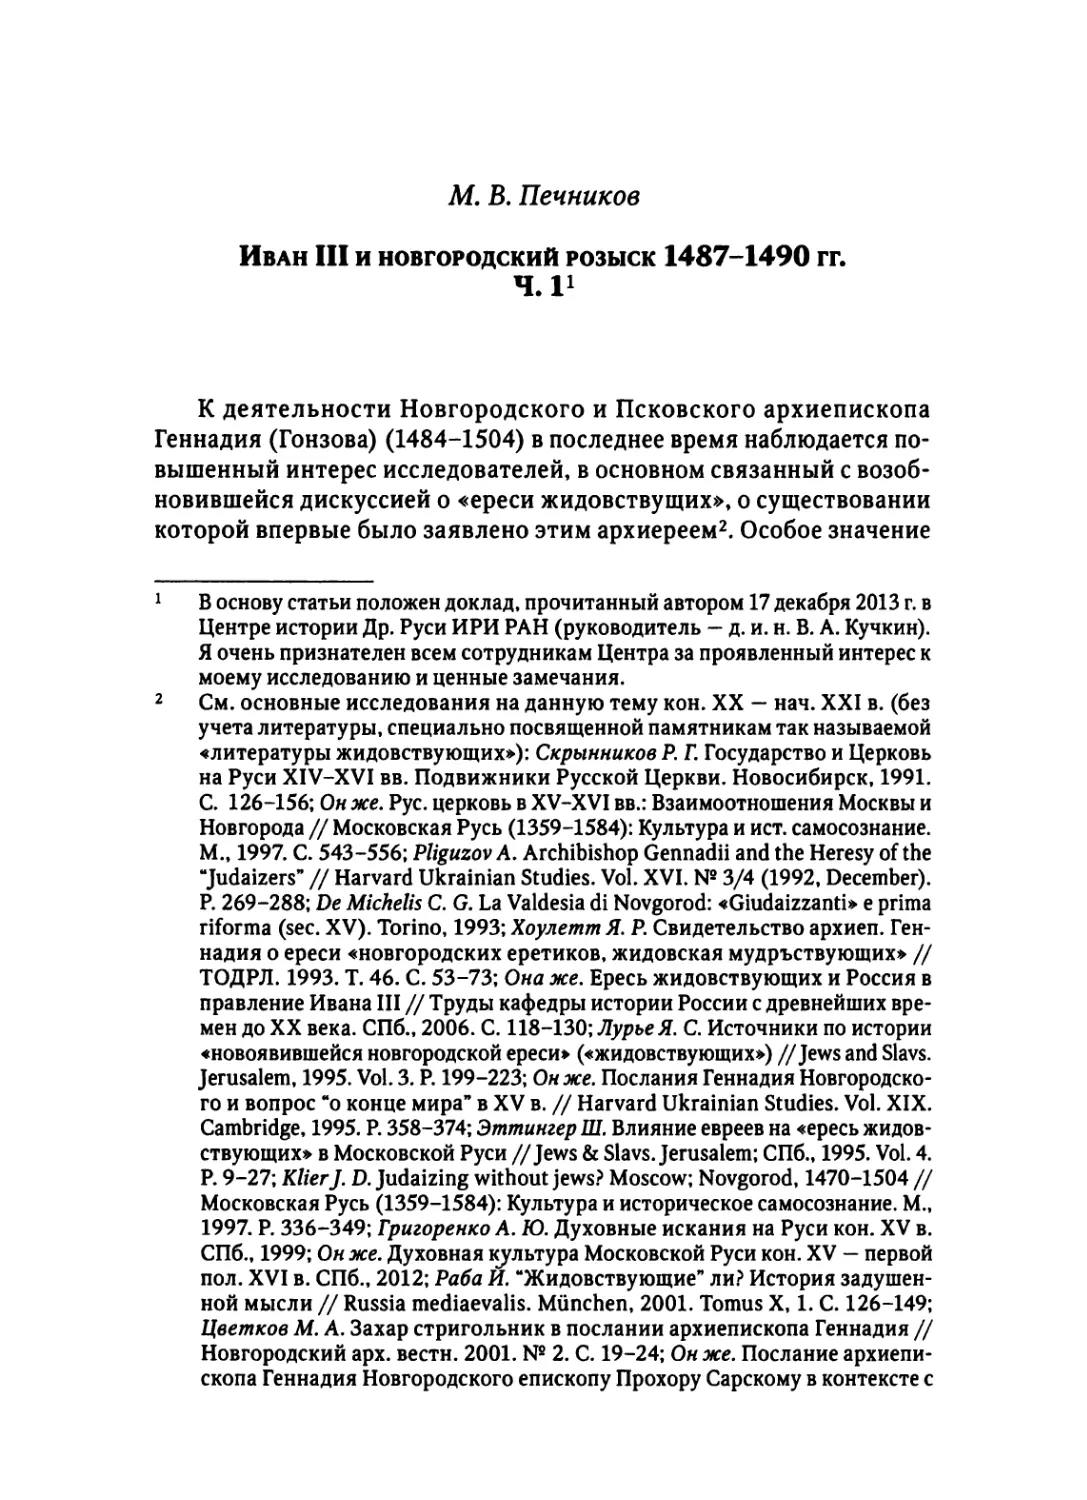 Печников М. В. Иван III и новгородский розыск 1487-1490 гг. Ч. 1